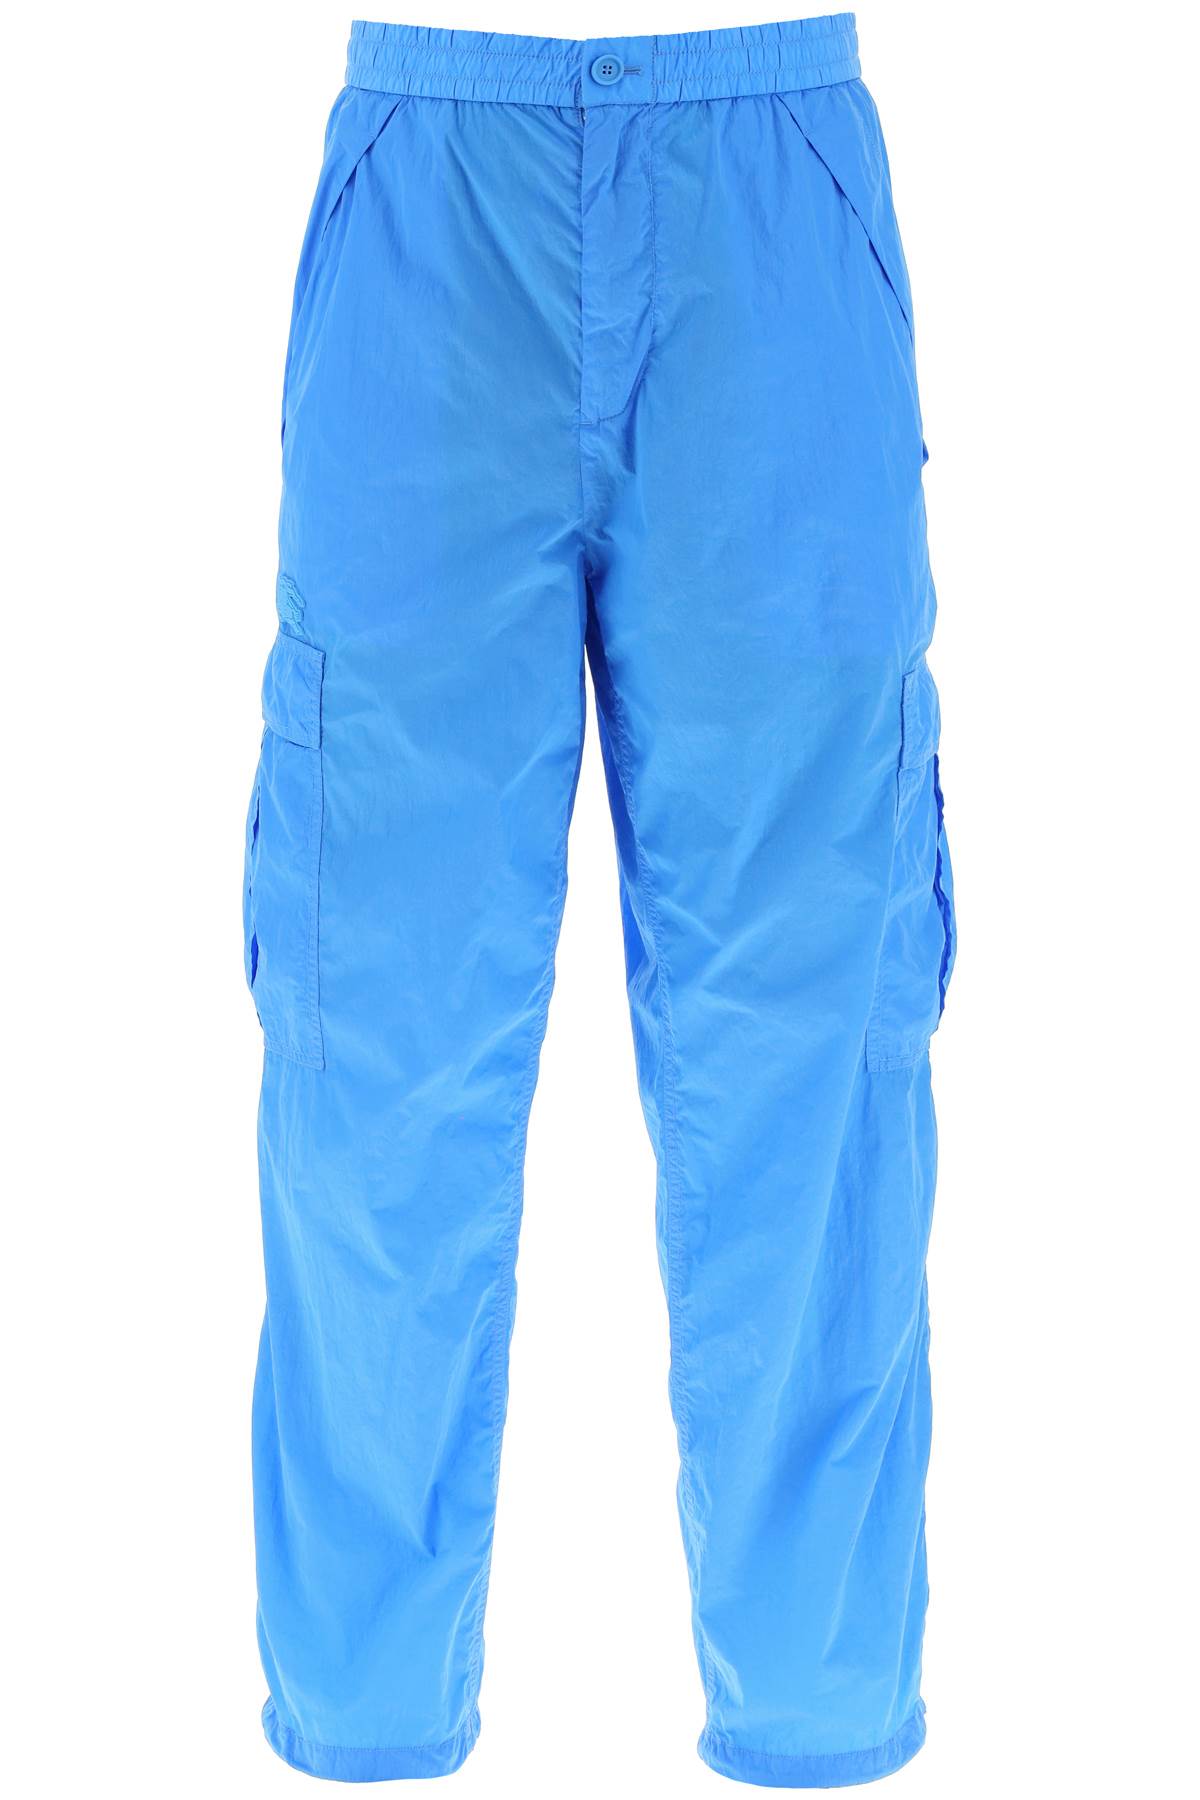 Burberry nylon cargo pants